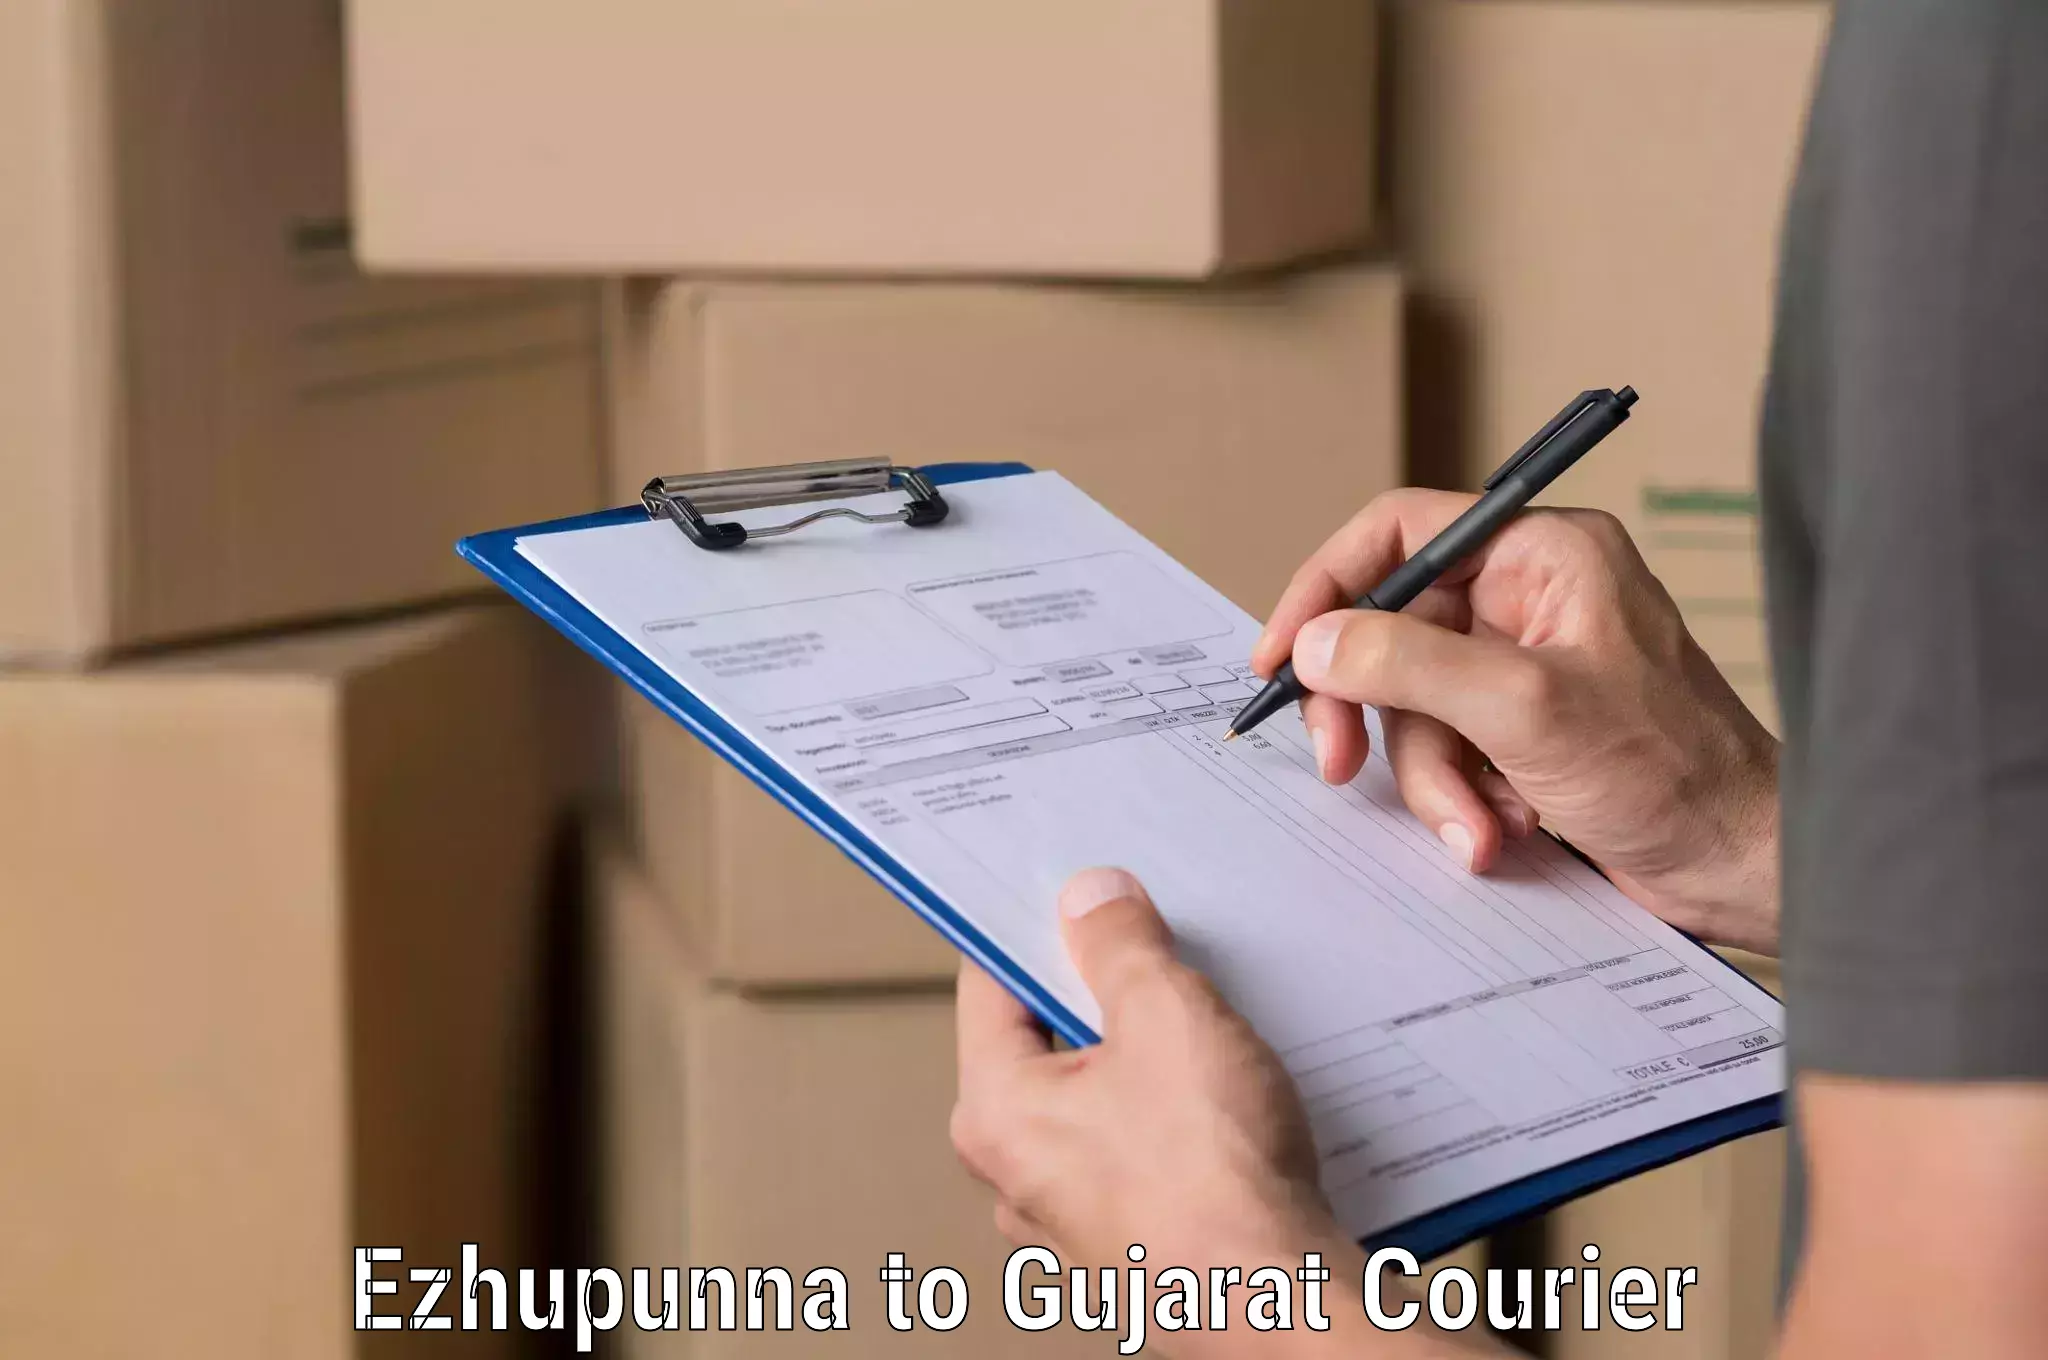 Customer-oriented courier services Ezhupunna to Kachchh